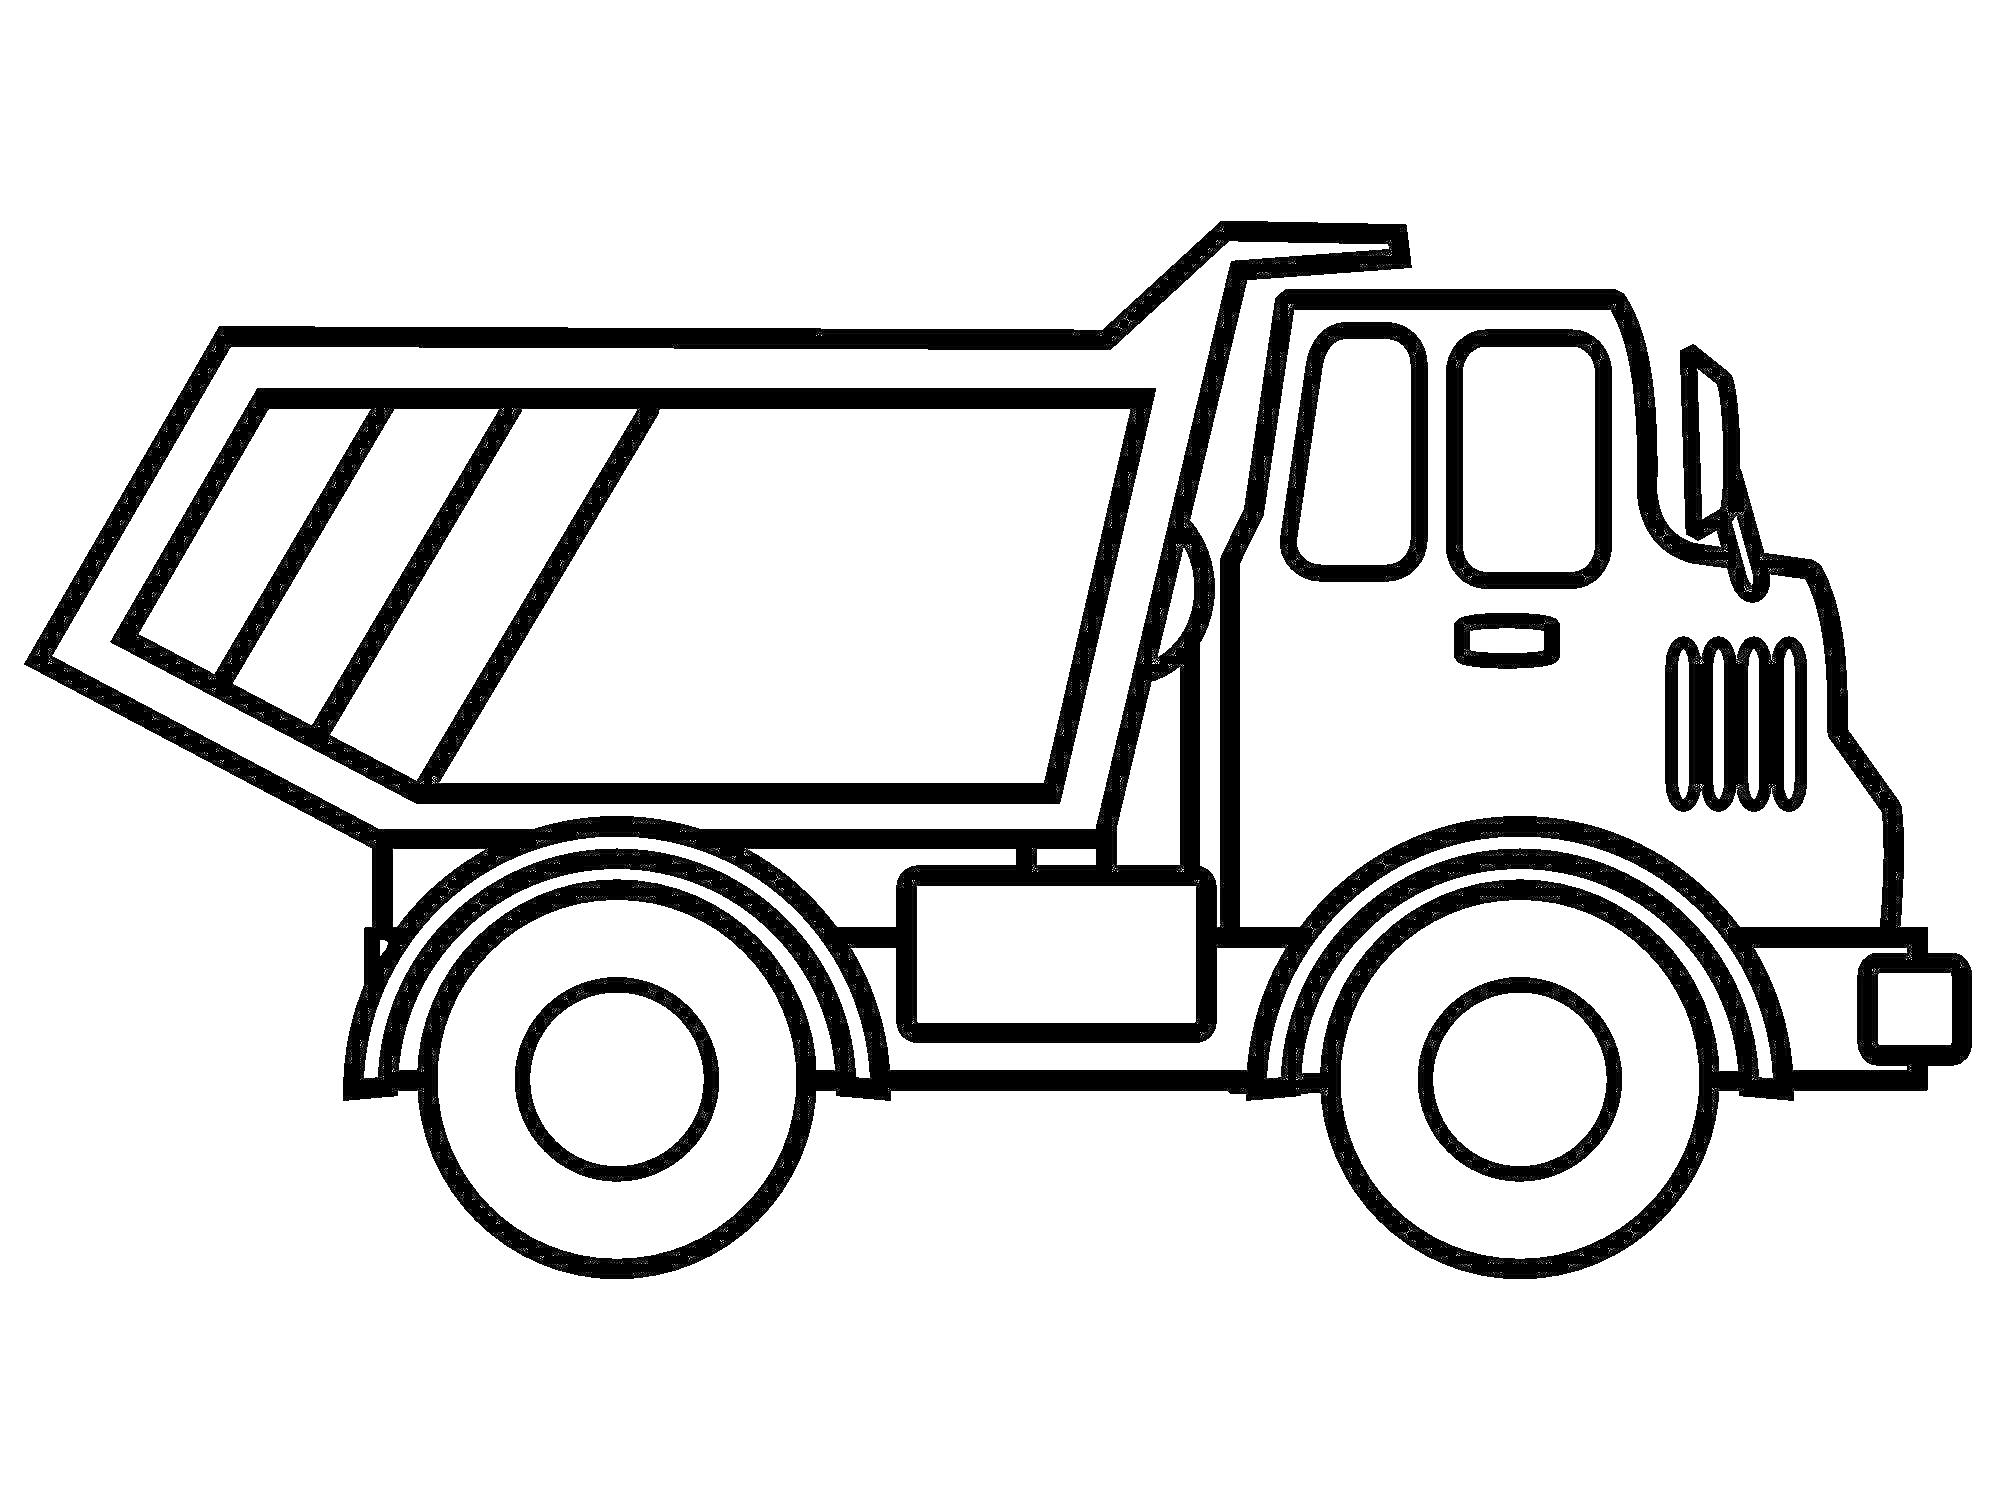 Раскраска Раскраска с изображением грузовика с открытым кузовом и большими колесами